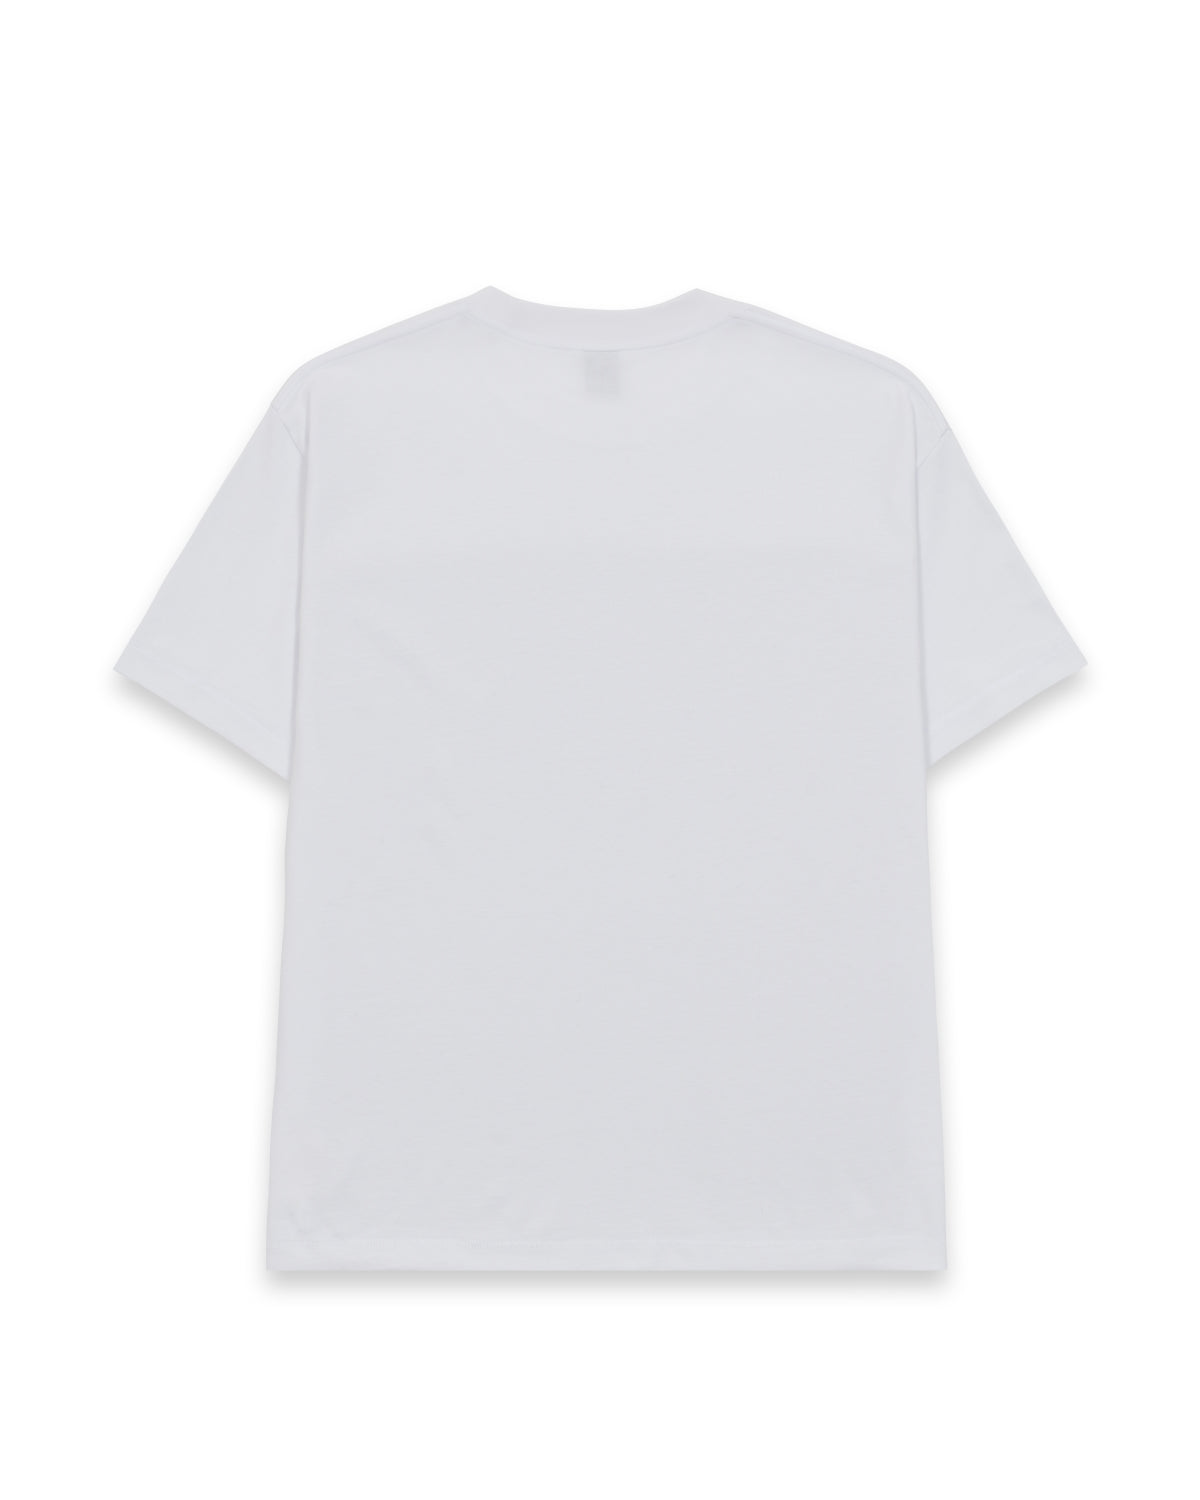 Easy Shirt - White – Brain Dead